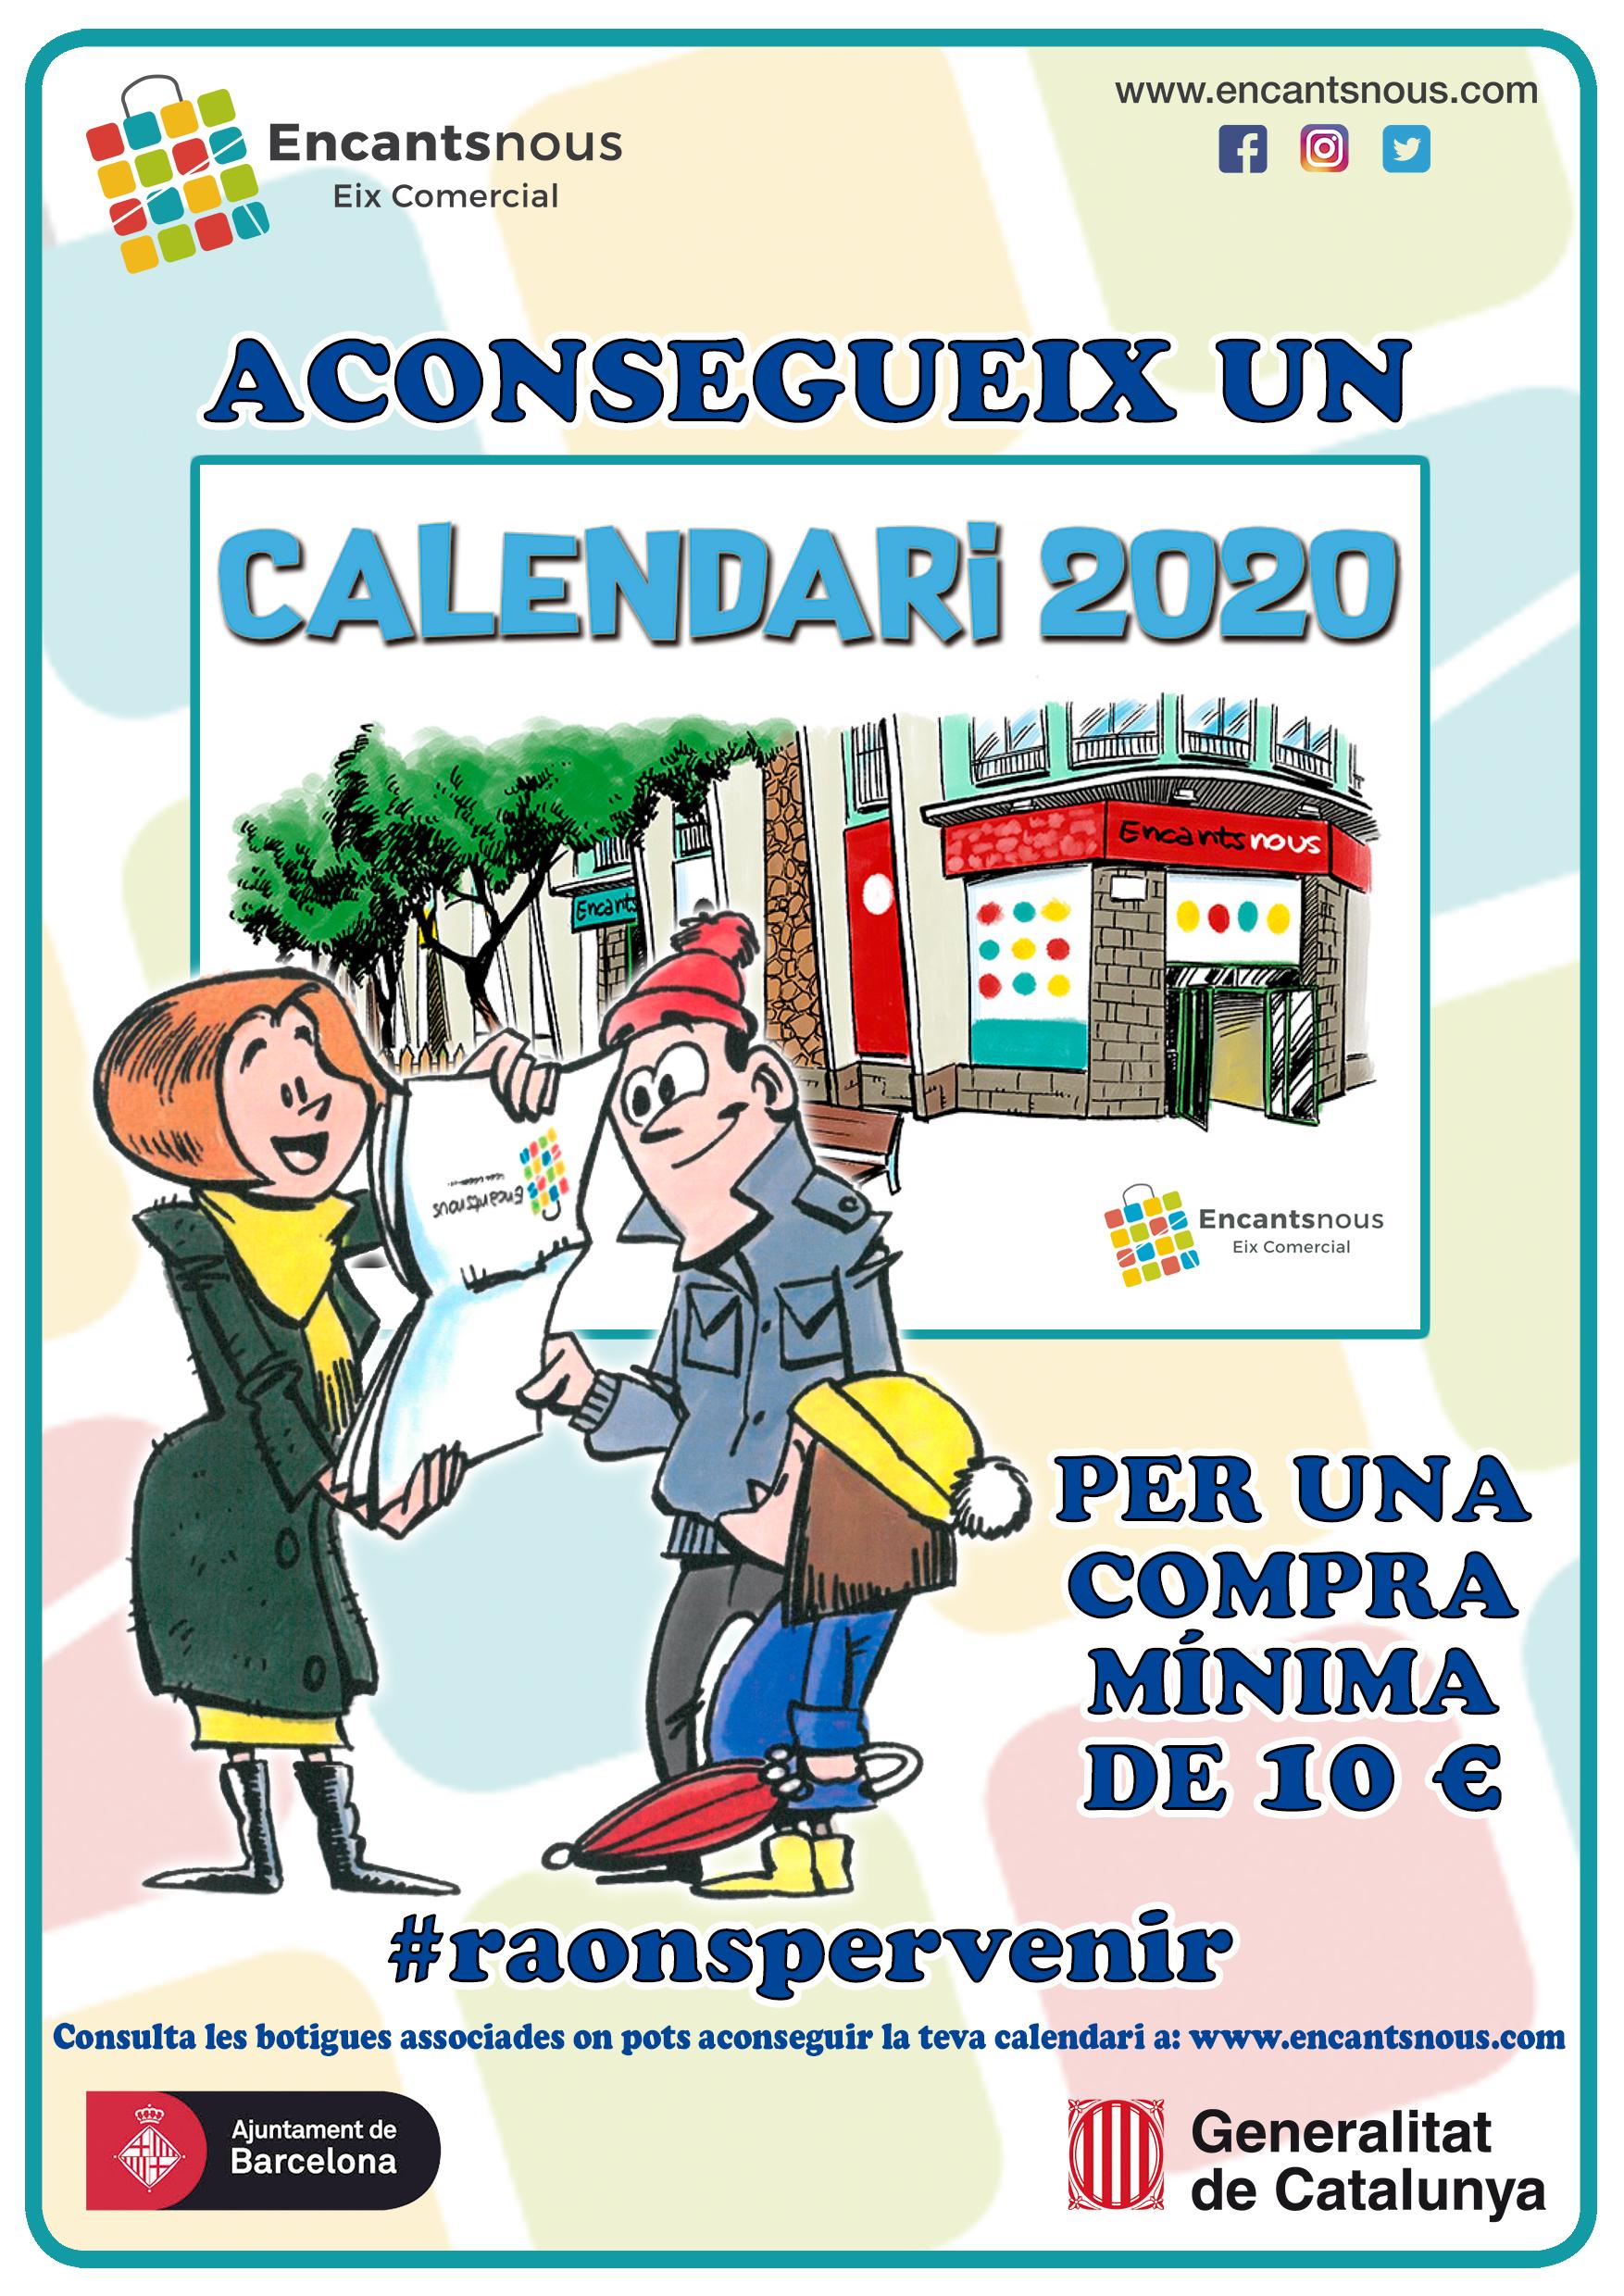 Calendari 2020 Encantsnous Eix Comercial